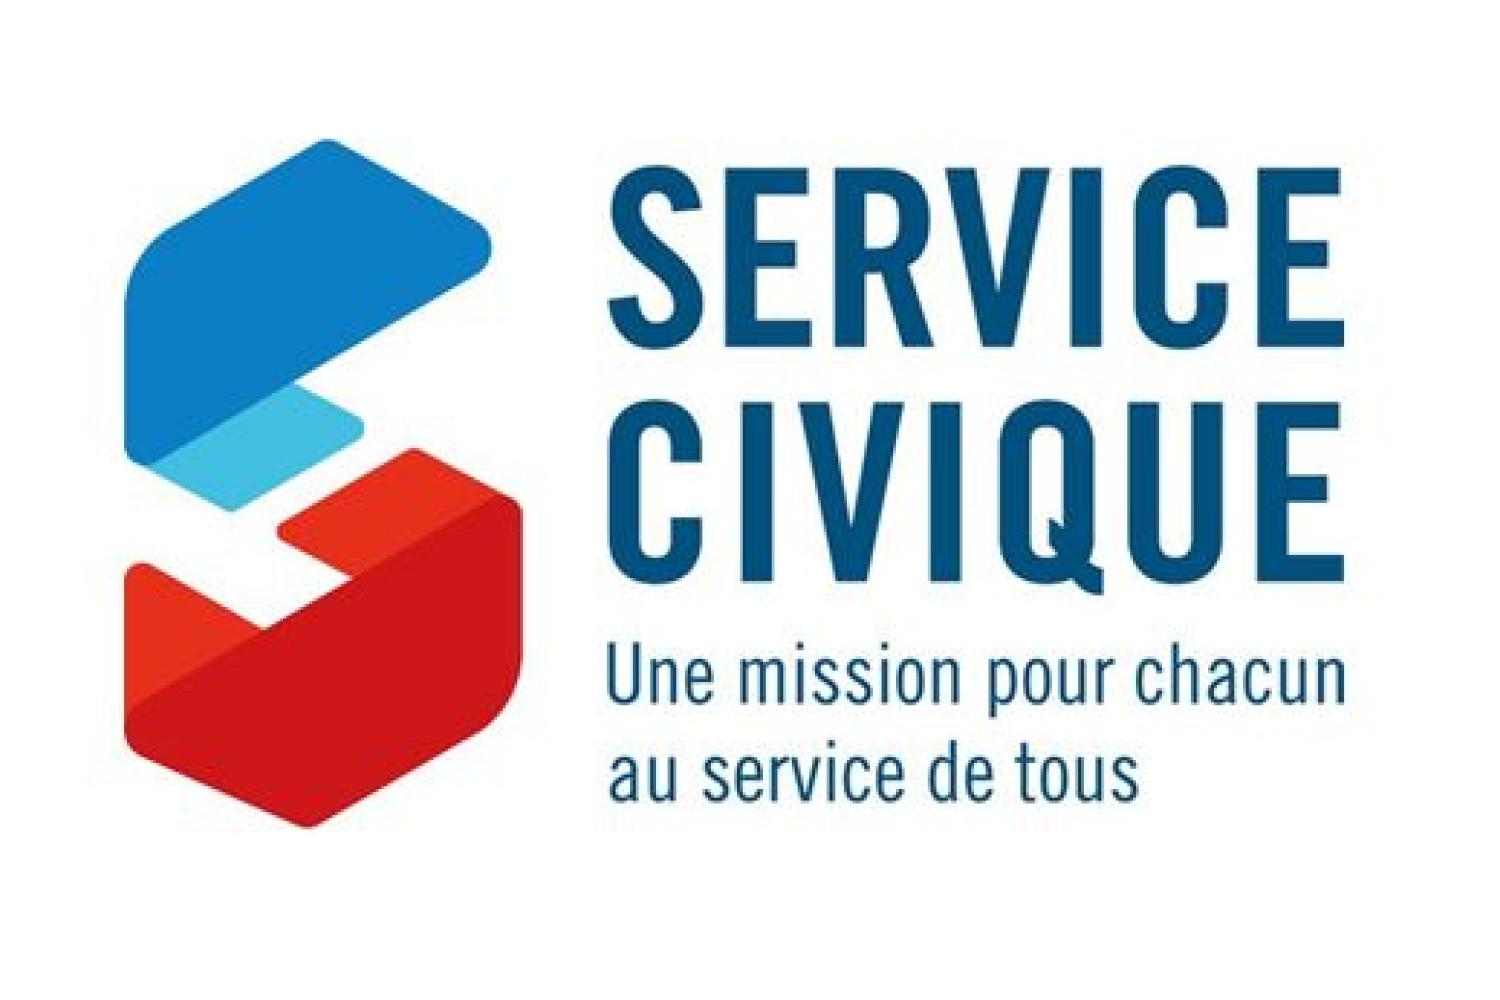 service_civique2.jpg